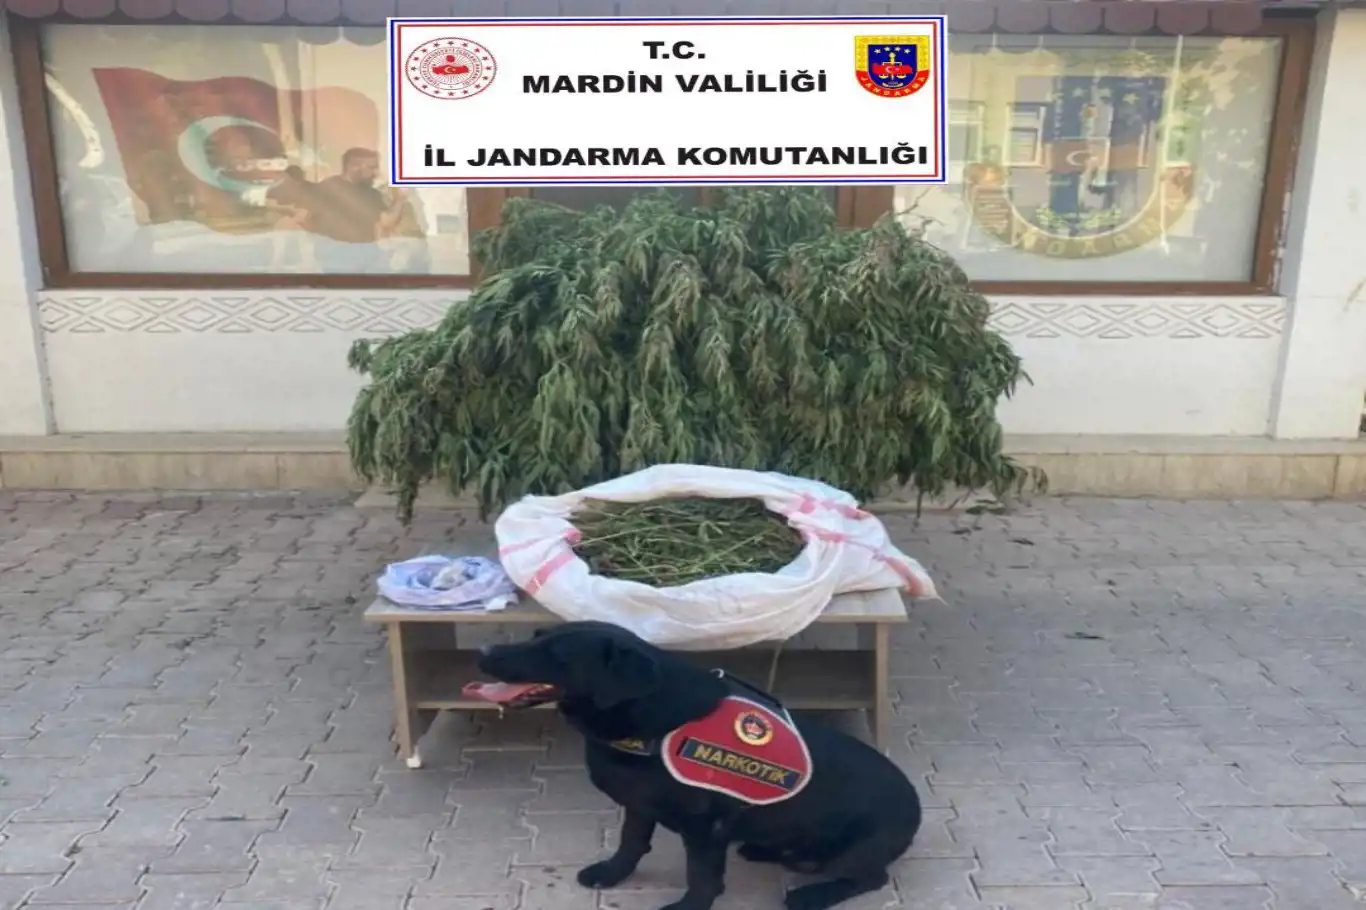 Mardin’de 4 buçuk kilo kubar esrar ele geçirildi